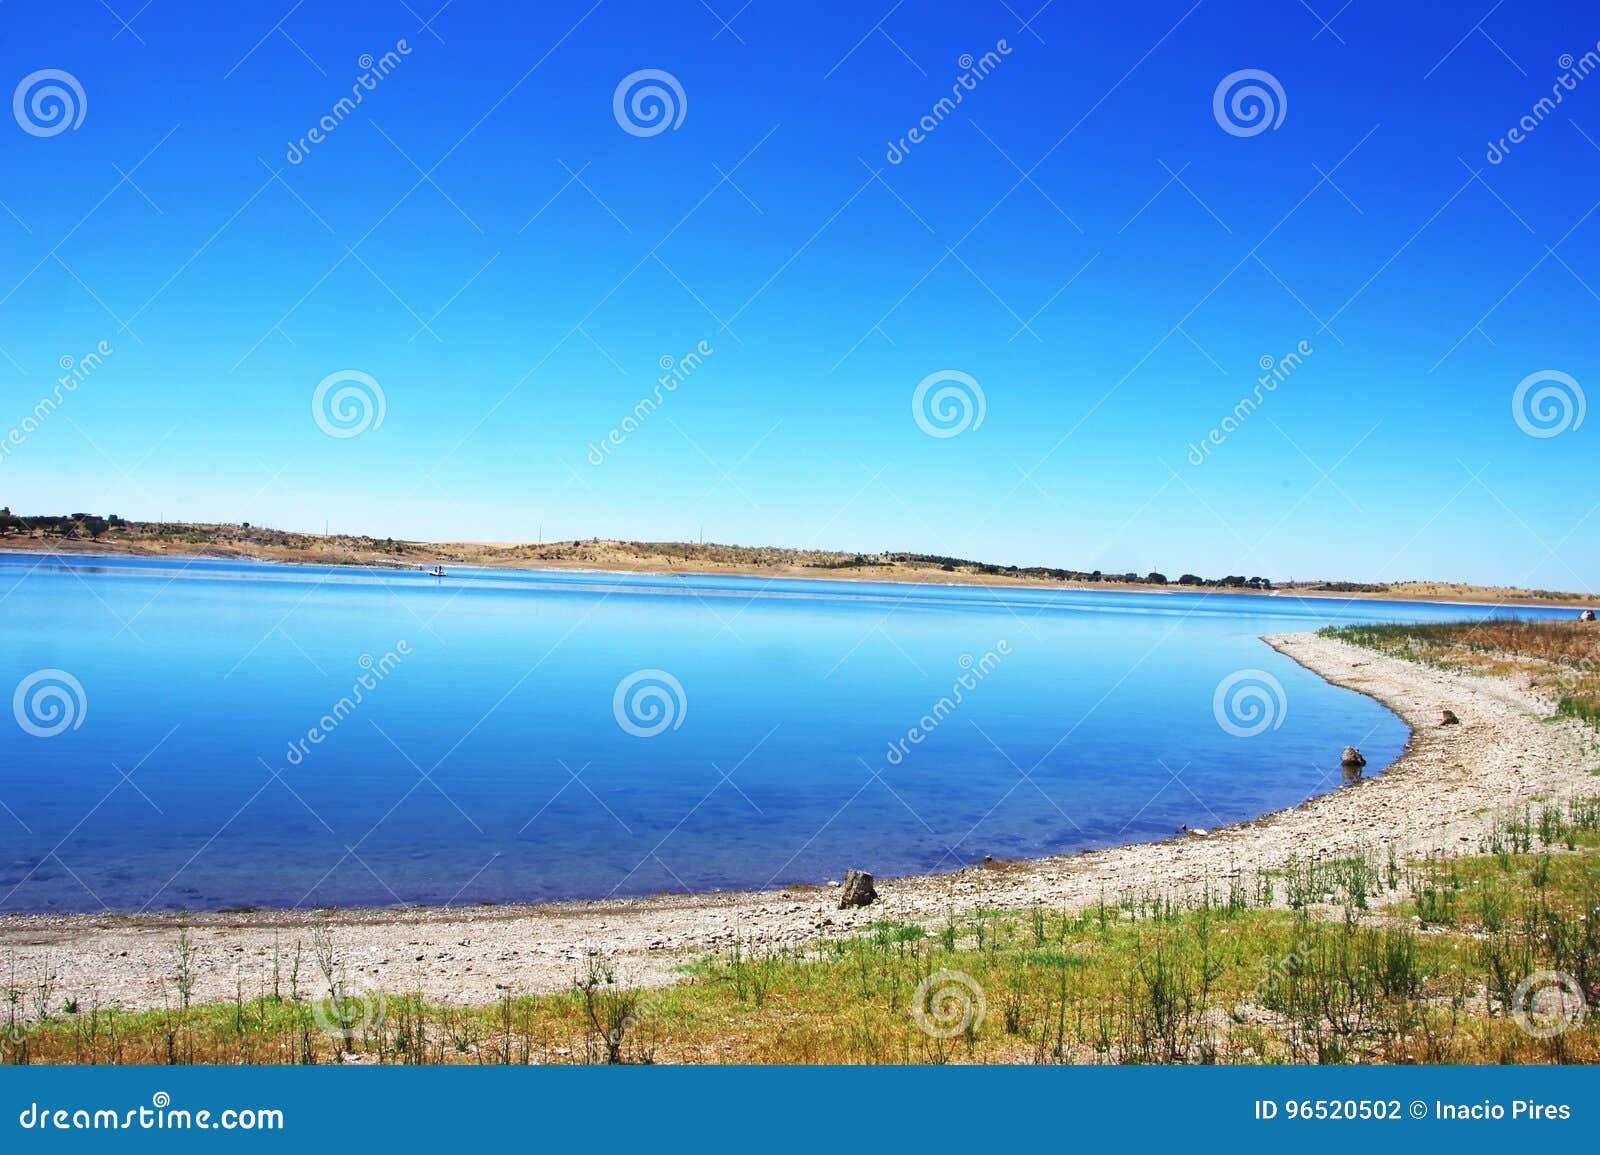 alqueva lake near mourao village, portugal